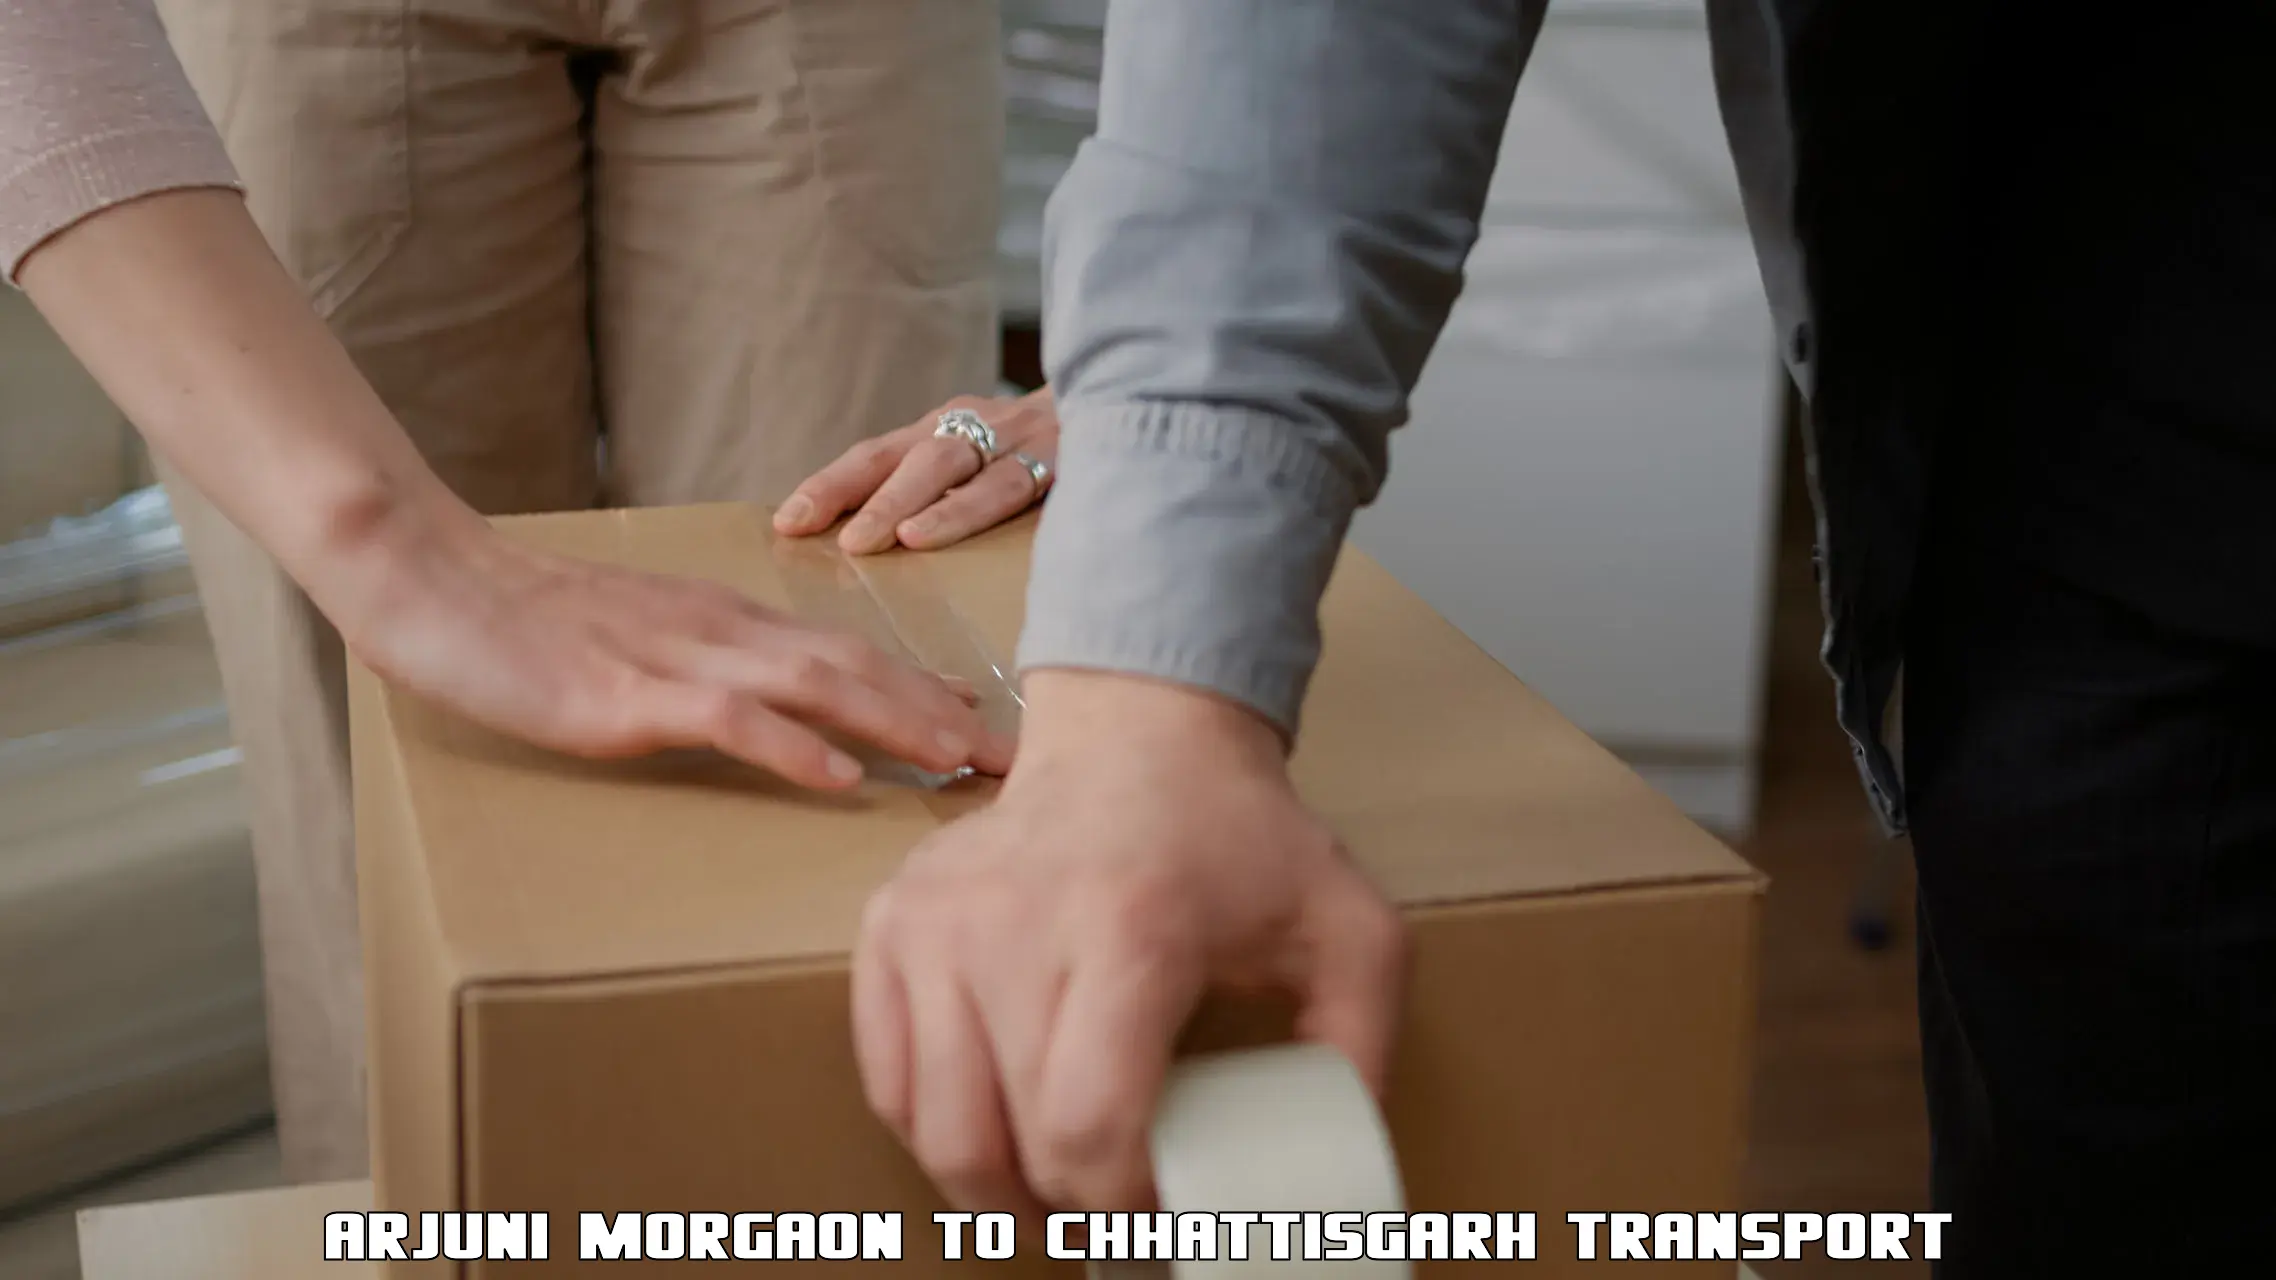 Furniture transport service Arjuni Morgaon to Chhattisgarh